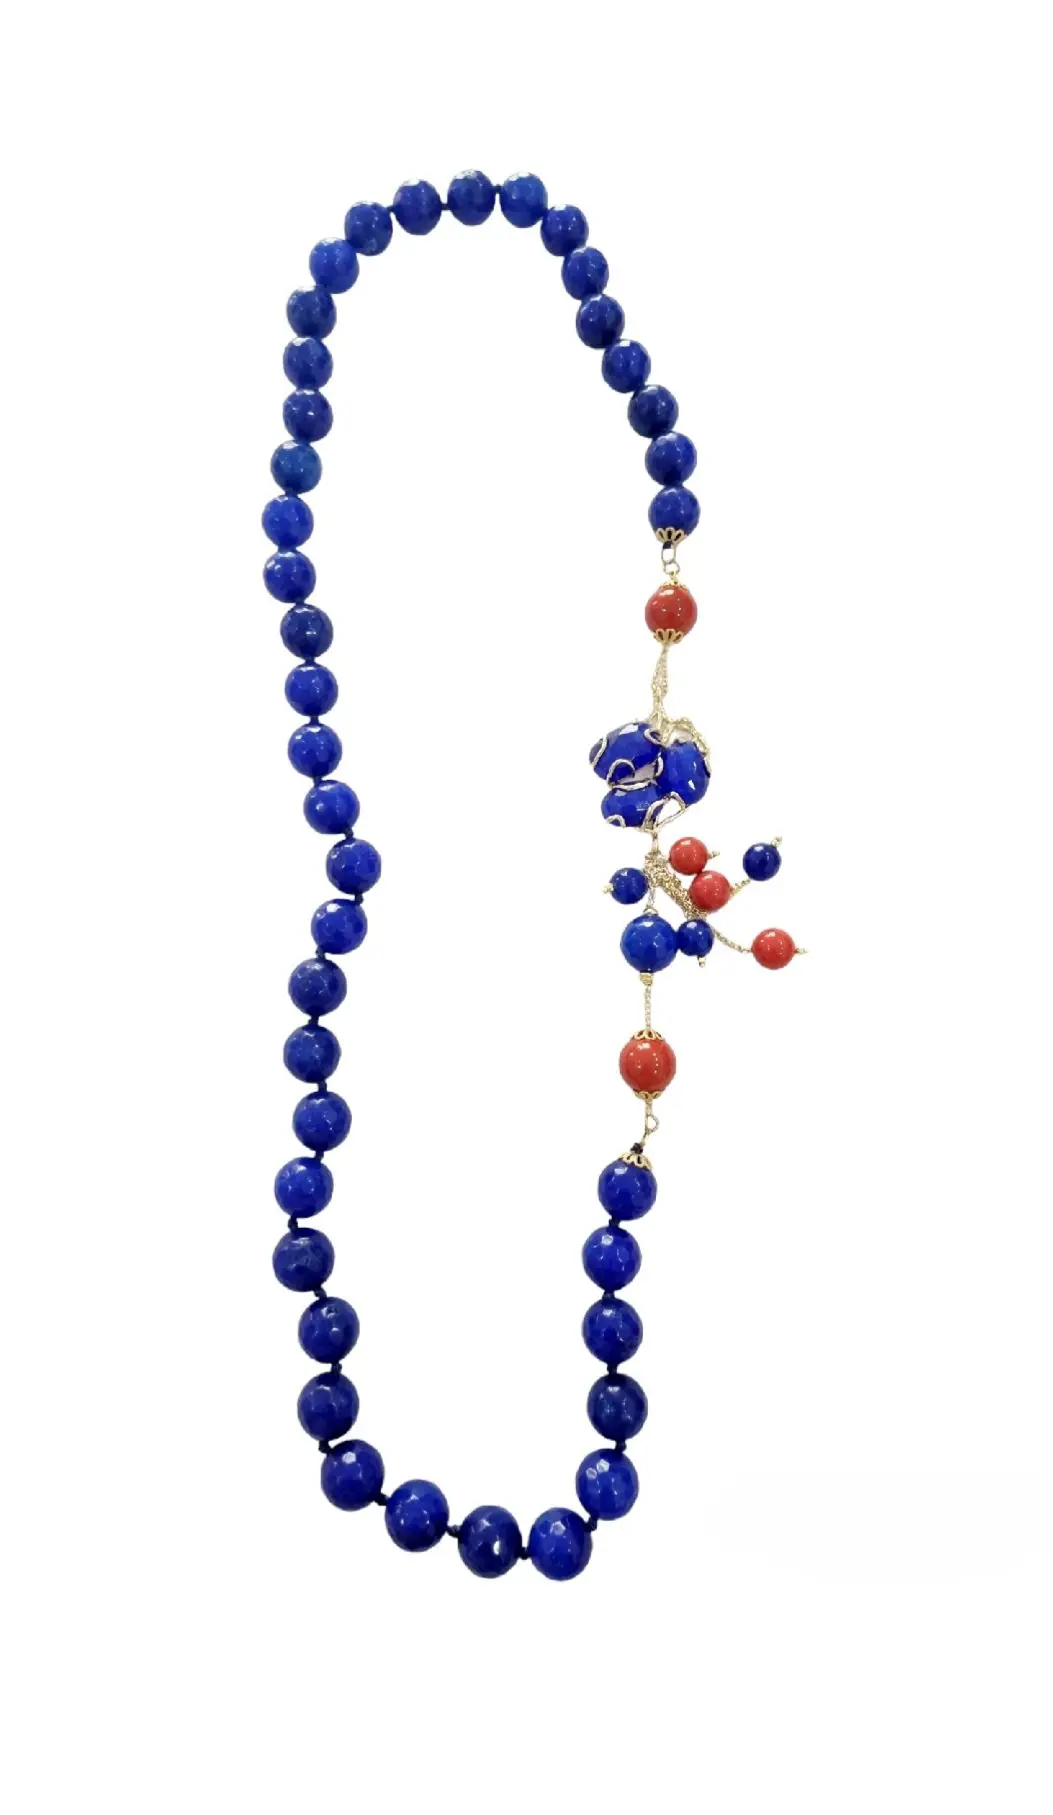 Collana realizzata con agata blu elettricoe pasta di corallo,laterale conocchio di gatto montato su ottone.
Lunghezza 78cm